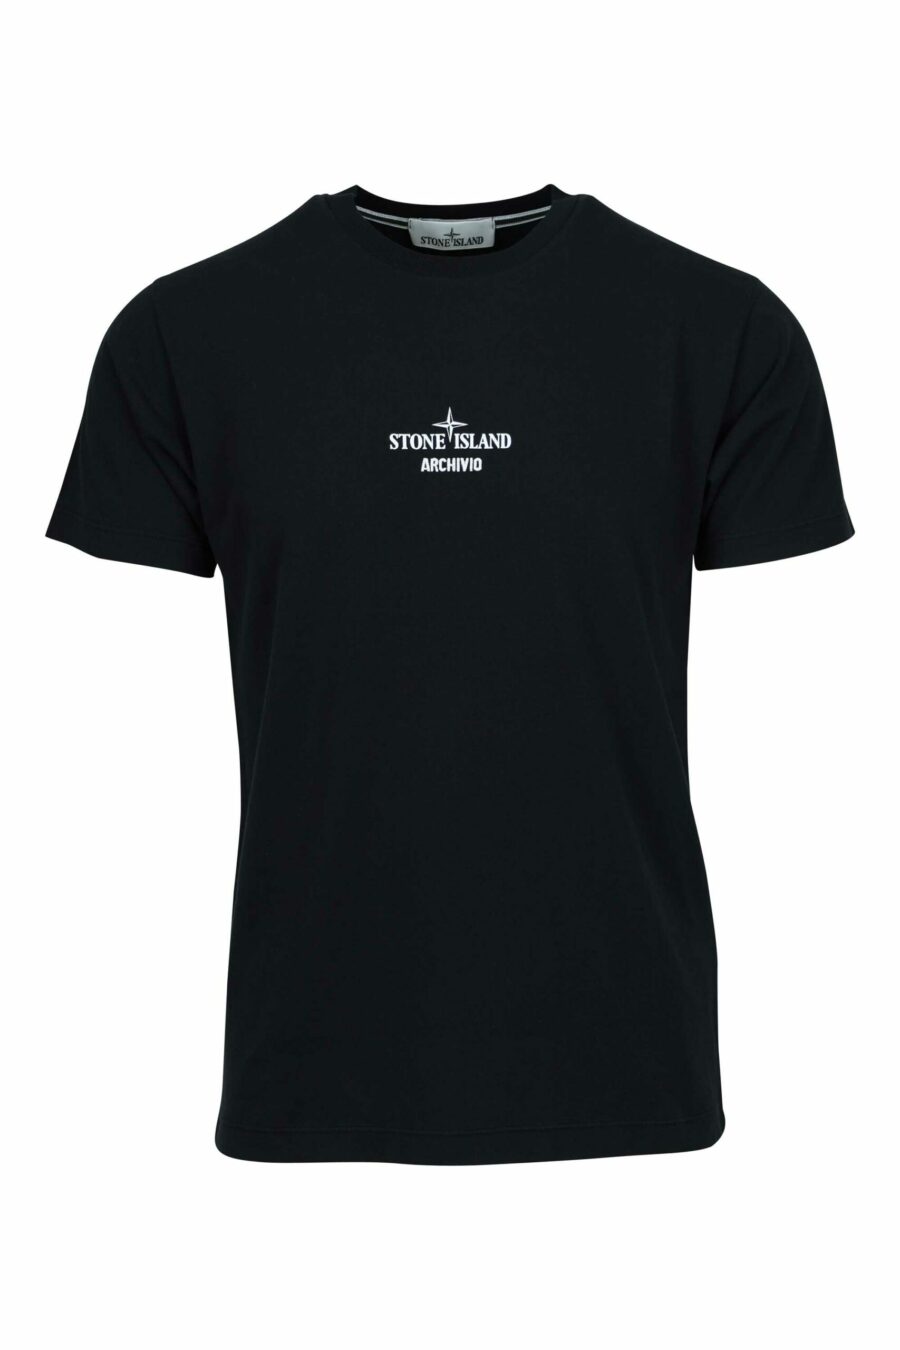 T-shirt noir avec mini logo "archivio" centré - 8052572924798